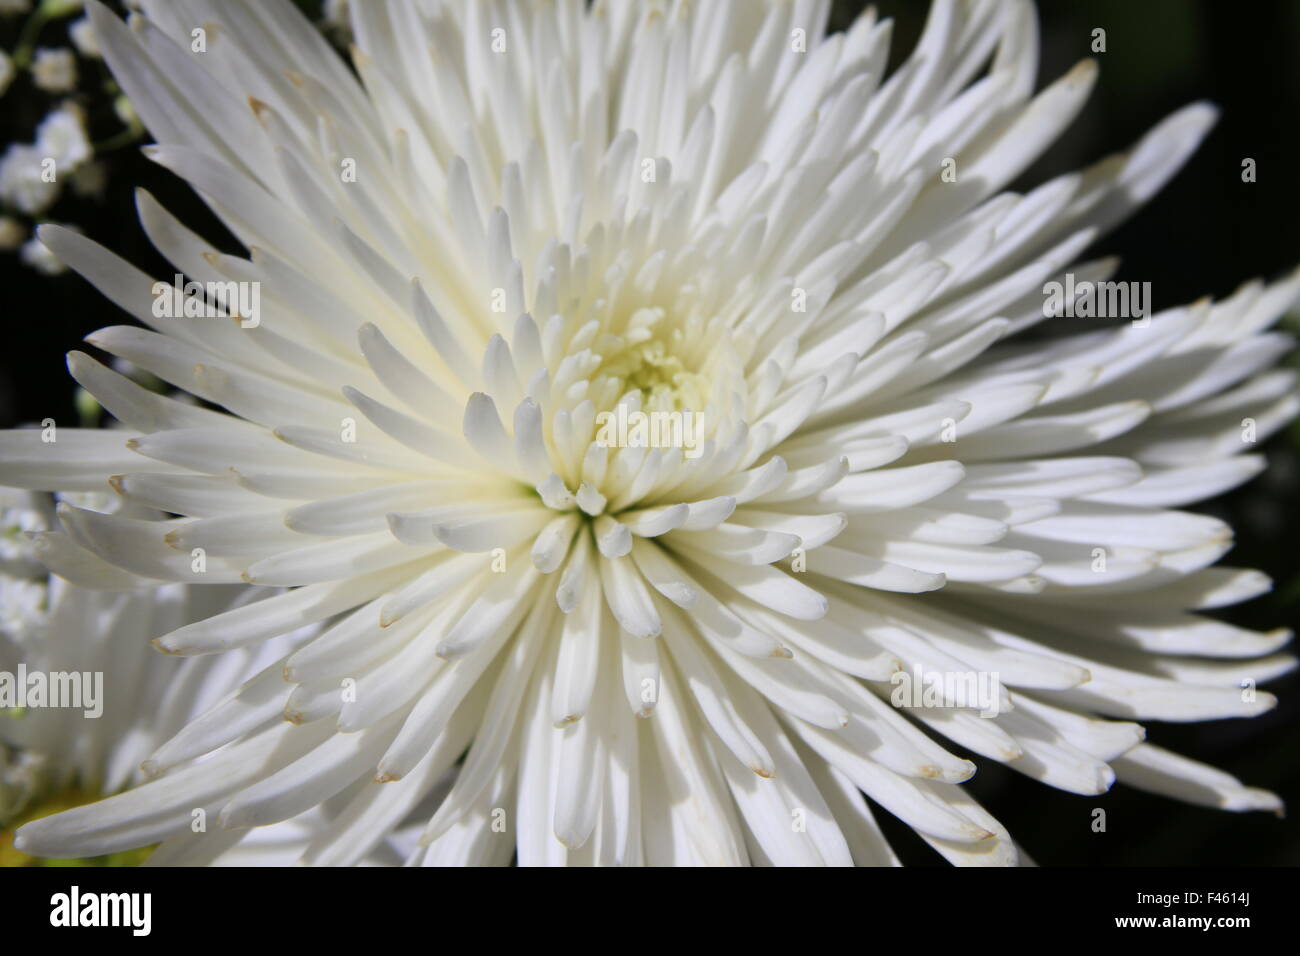 Bella bianca spider mamma fiore fotografia macro Foto Stock